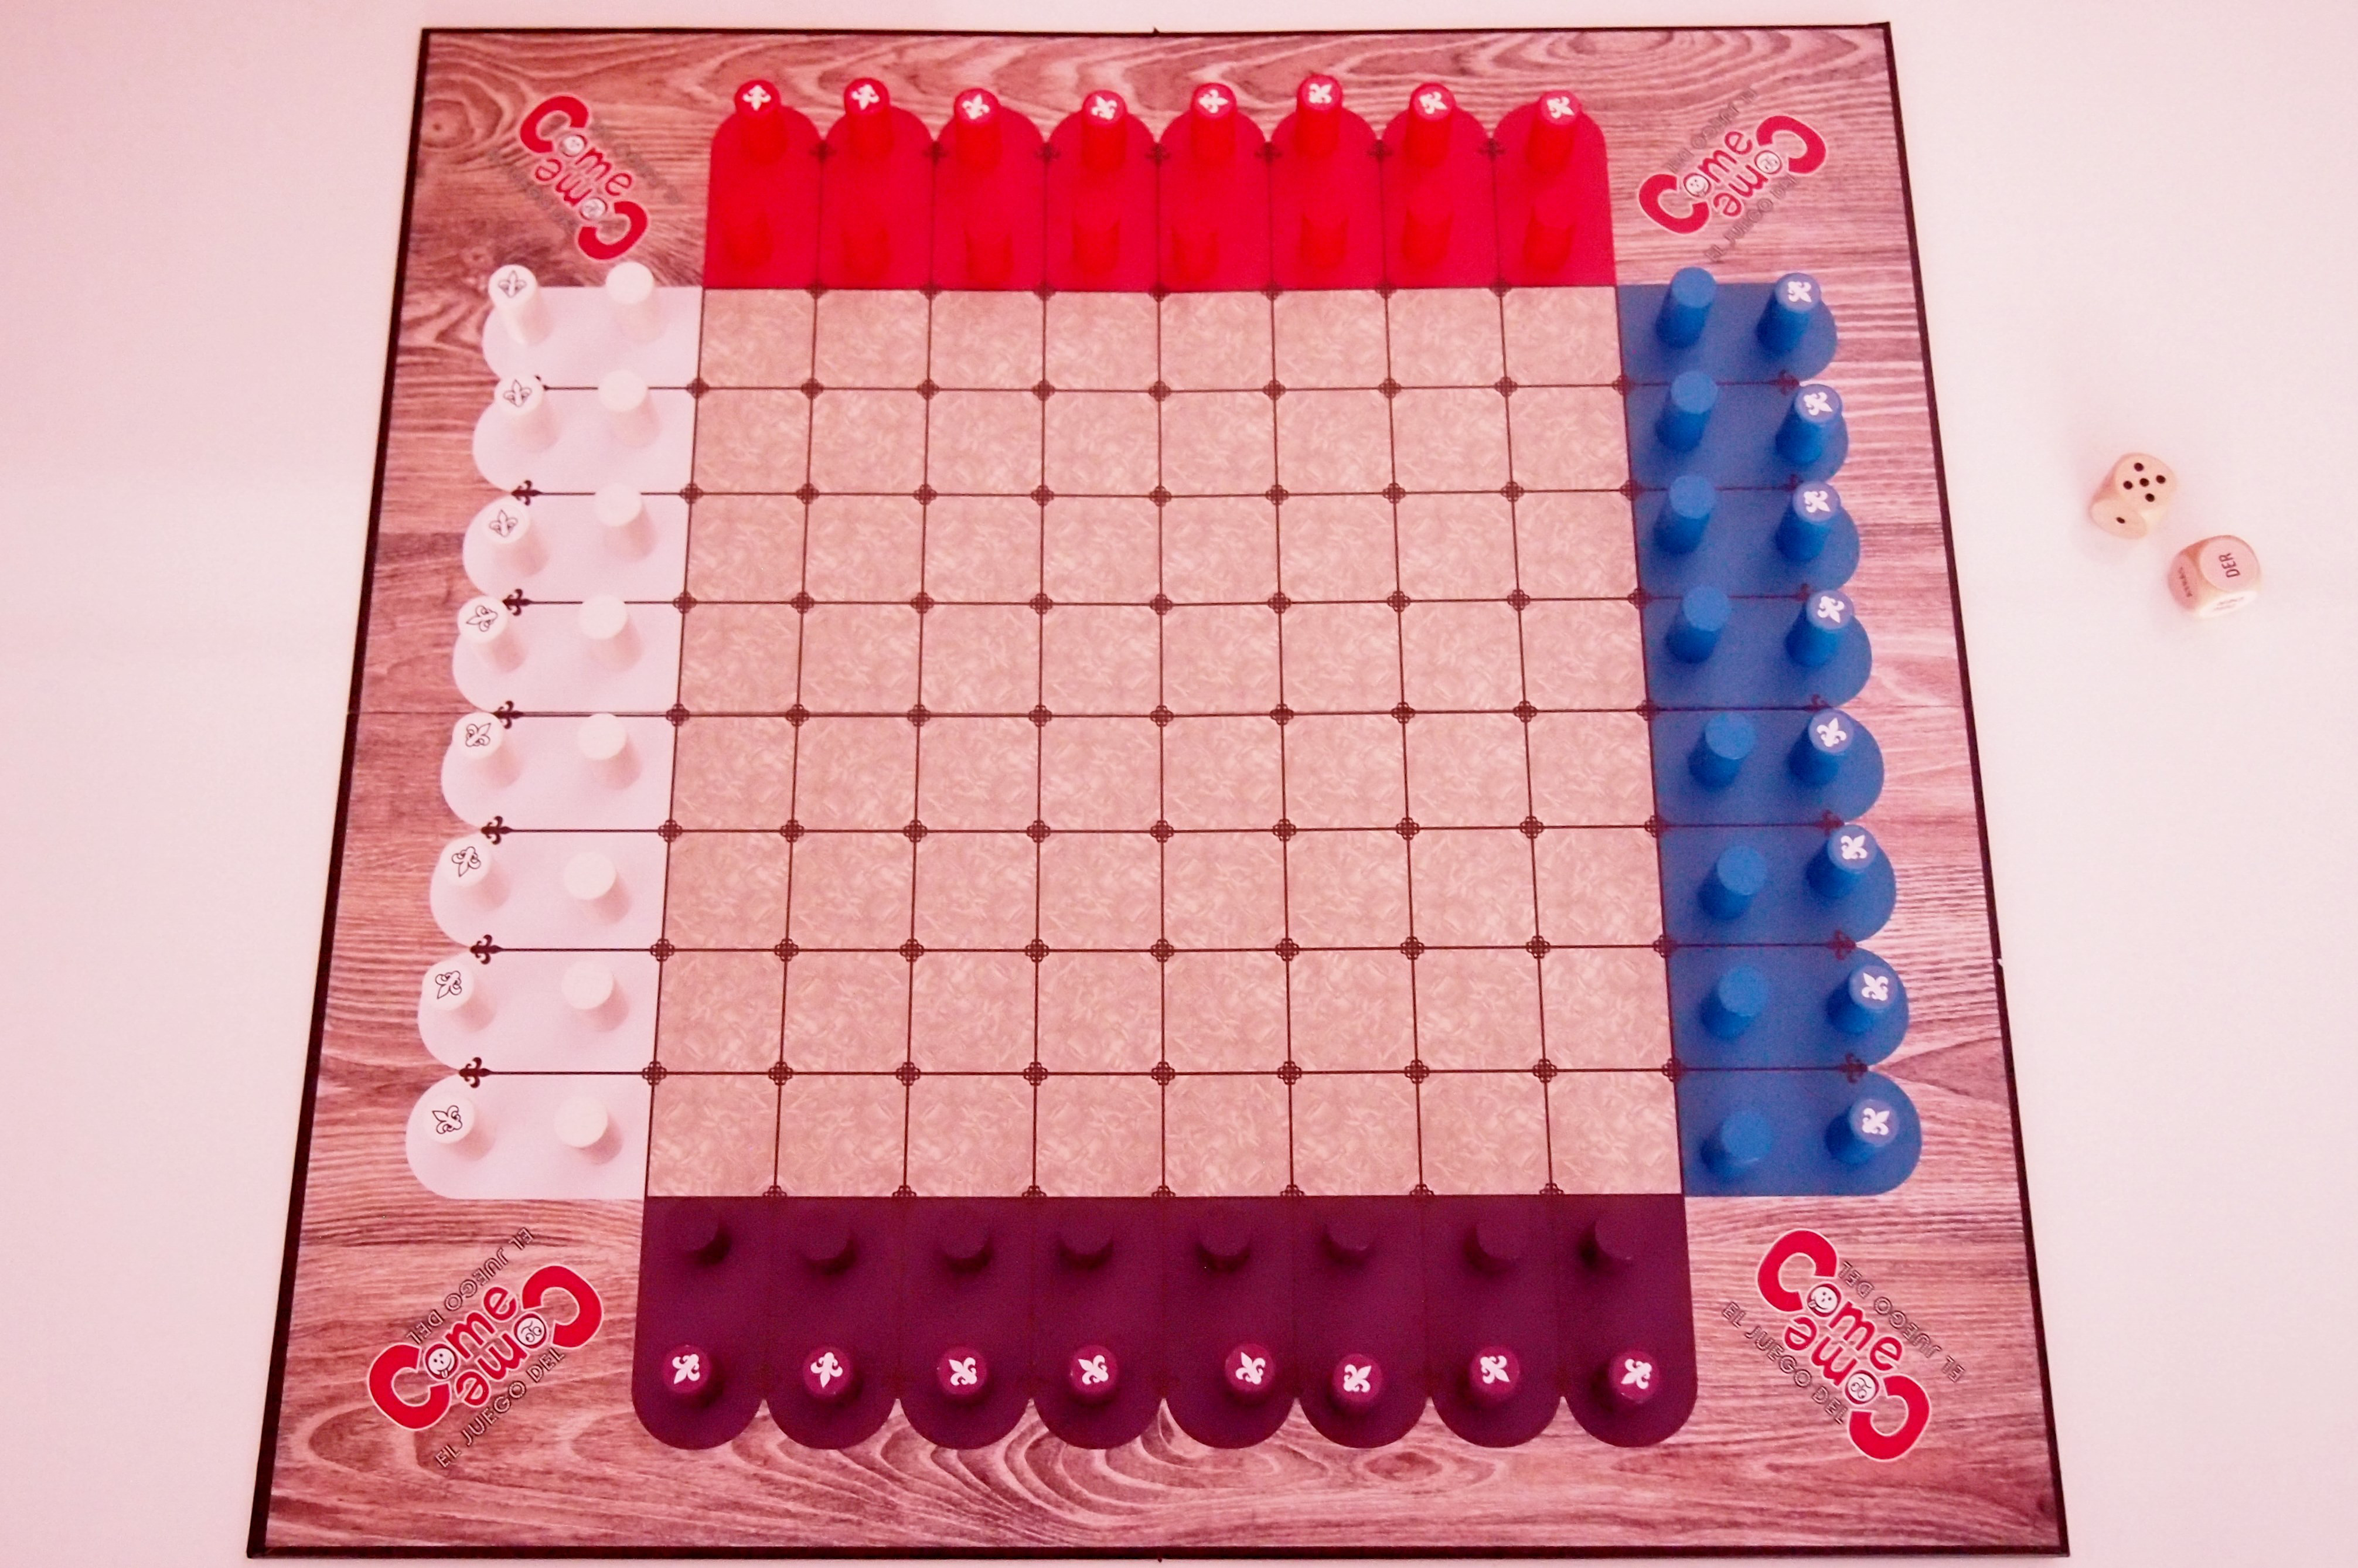 Antes de empezar, cada jugador coloca sus fichas en su color. 